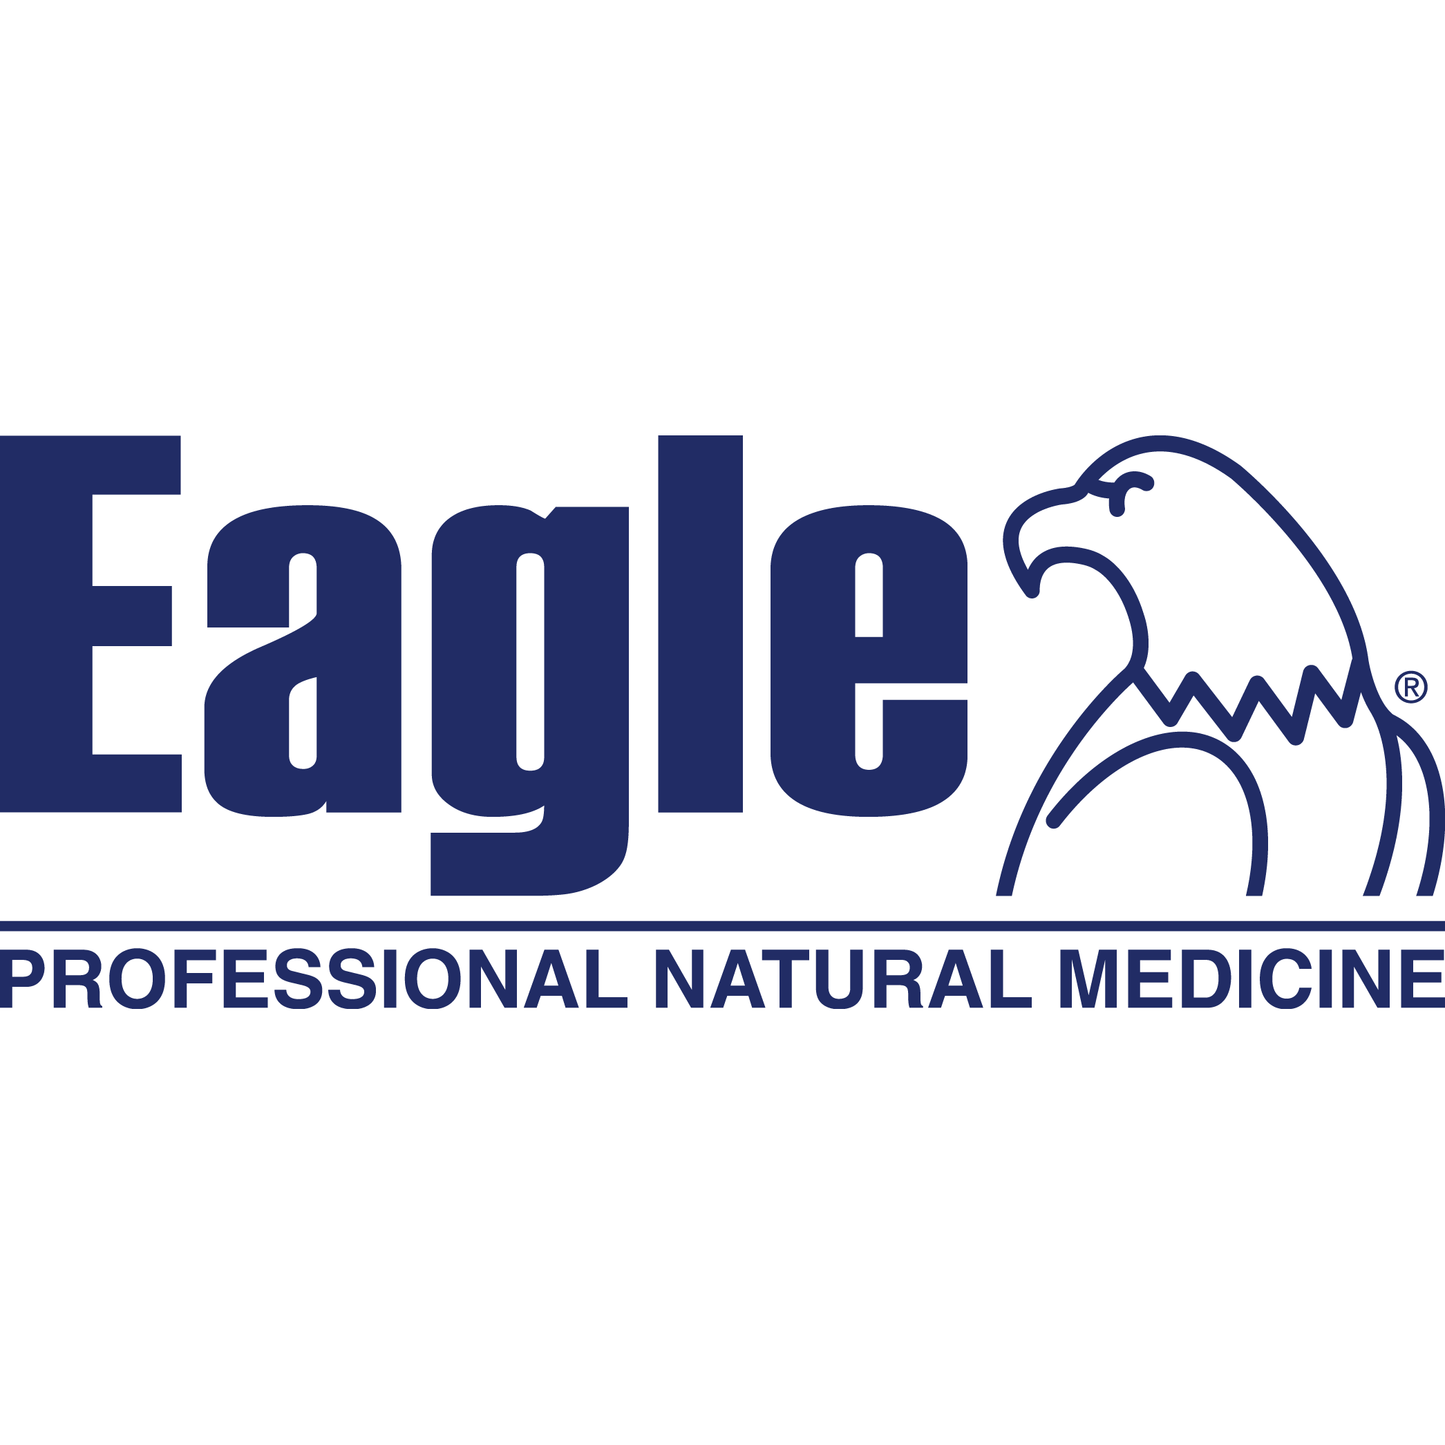 Eagle Mag Restore 60 Tablets